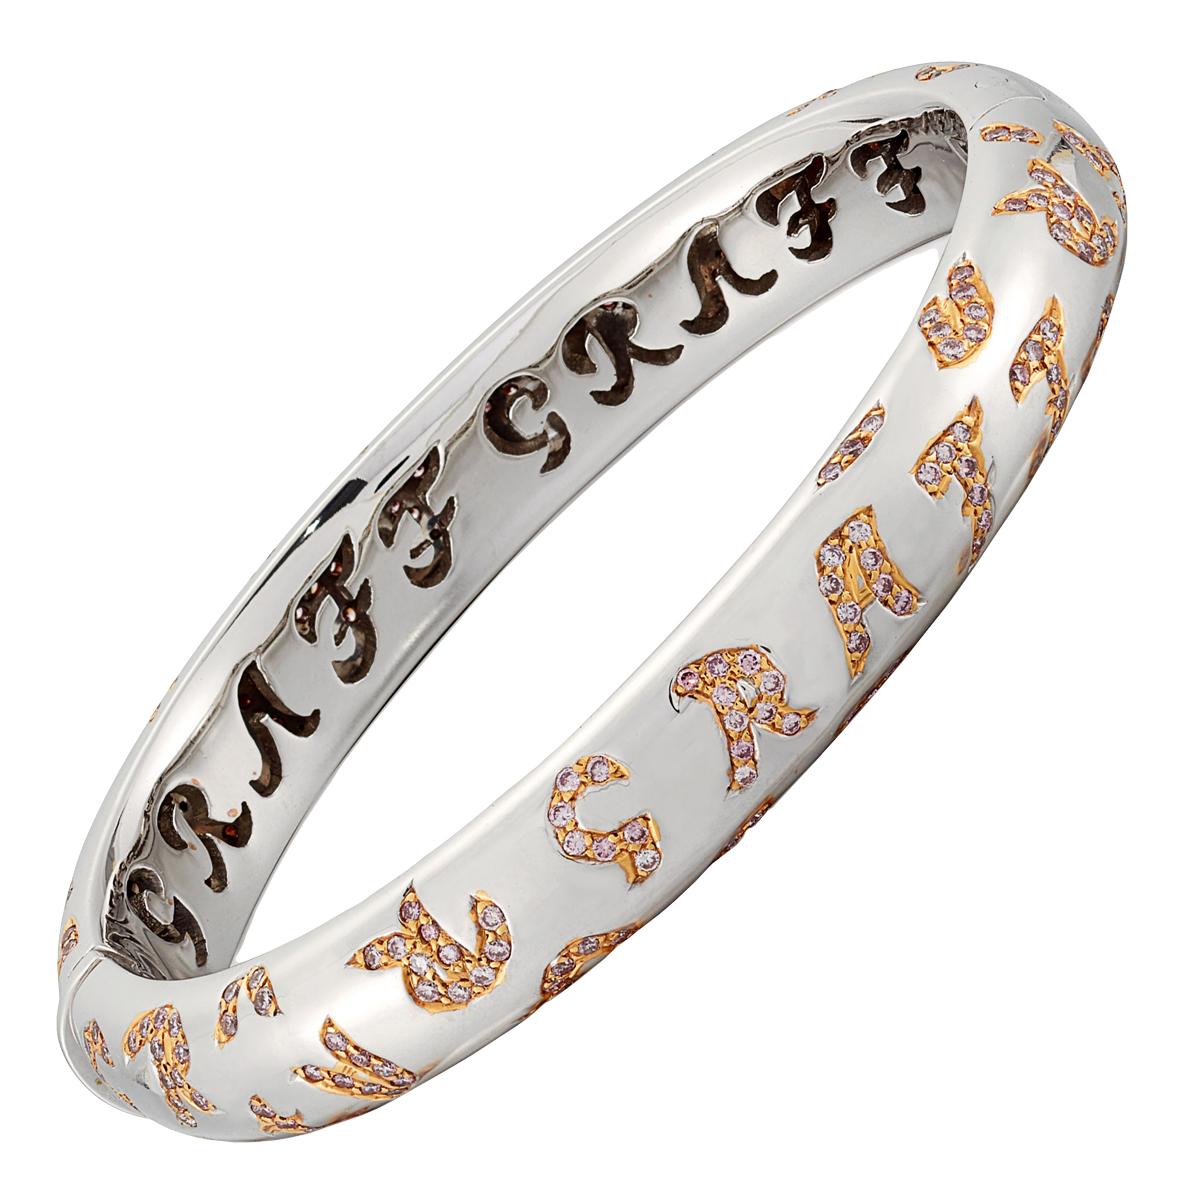 Ce fabuleux bracelet-bracelet en diamants Graff présente 291 des plus beaux diamants roses Graff (2,04 ct) dans un or blanc 18 carats chatoyant. 